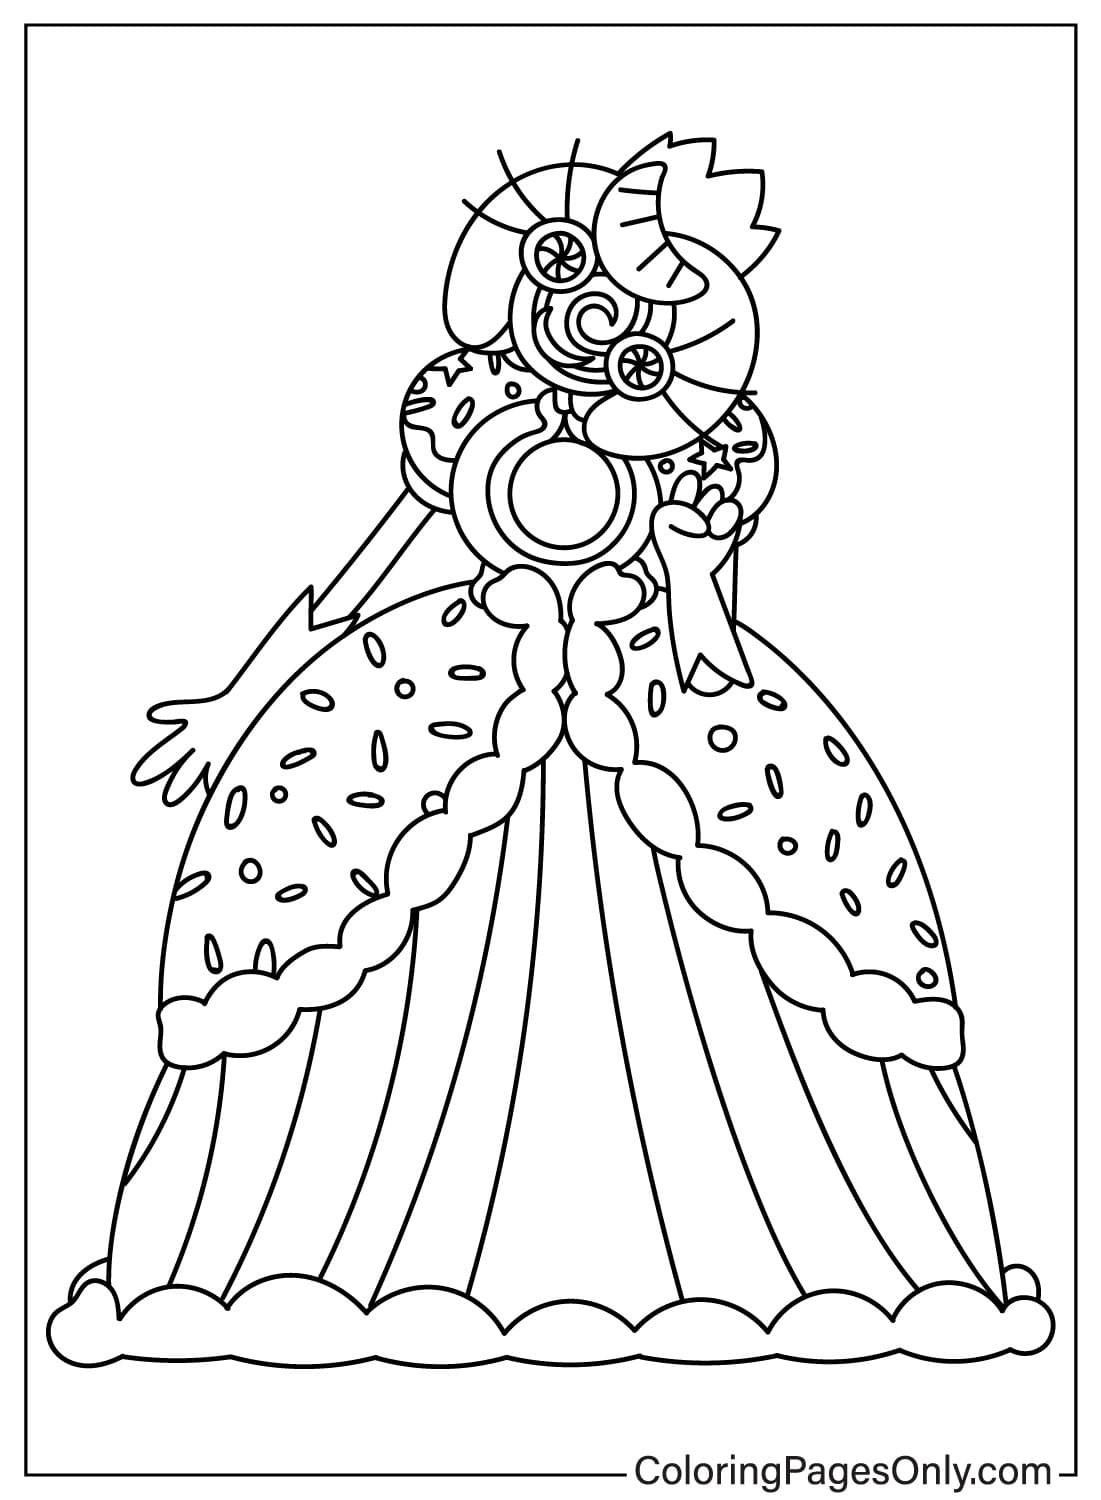 卢利拉鲁公主着色表来自卢利拉鲁公主